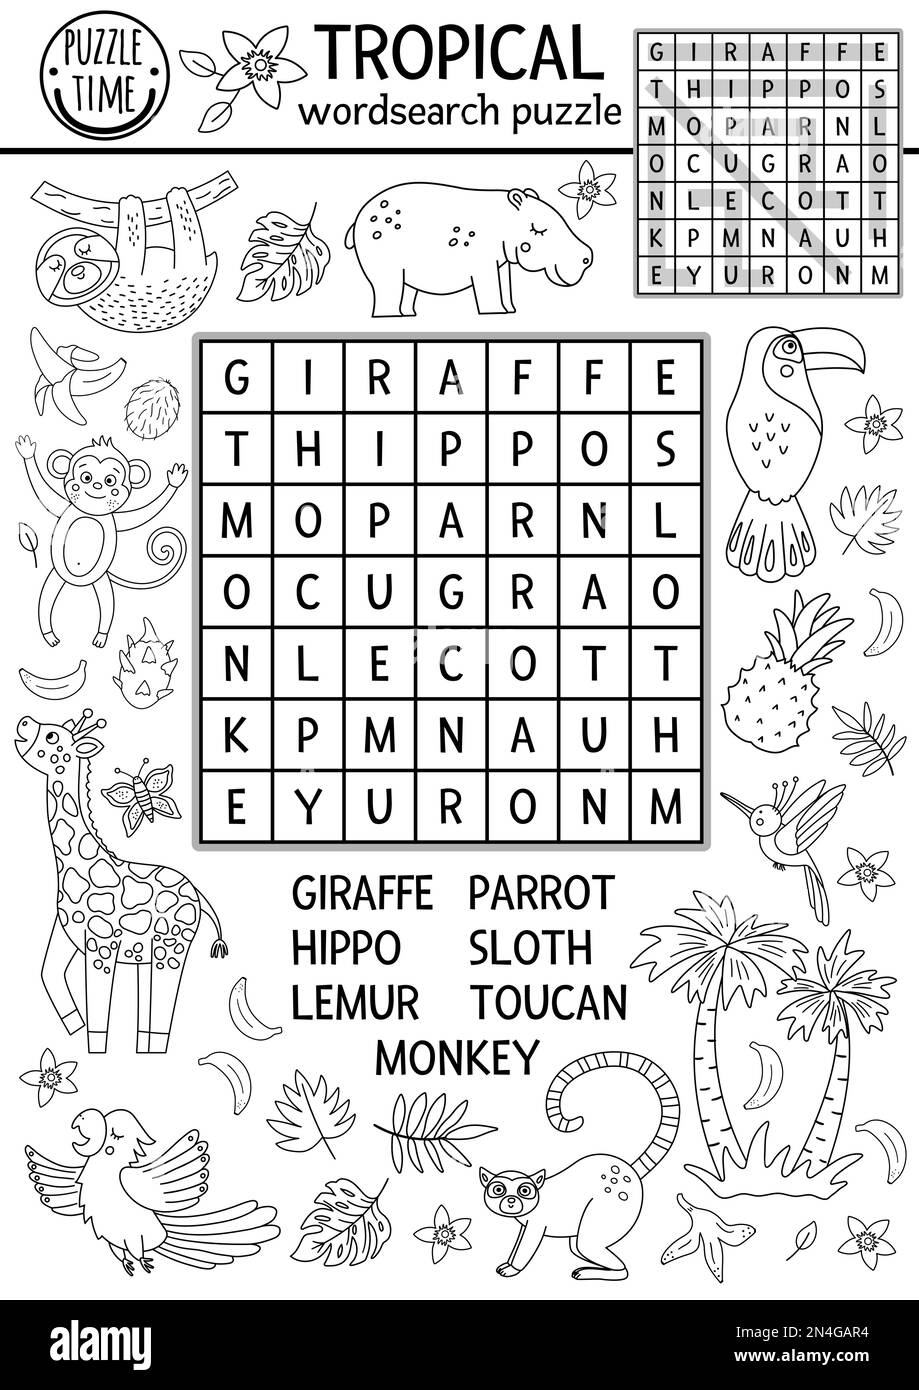 Vector Schwarz-Weiß-Puzzle für die tropische Wortsuche für Kinder. Einfaches Sommer-Kreuzworträtsel mit exotischen Tieren und Vögeln für Kinder. Schlüsselwort Activity with Stock Vektor